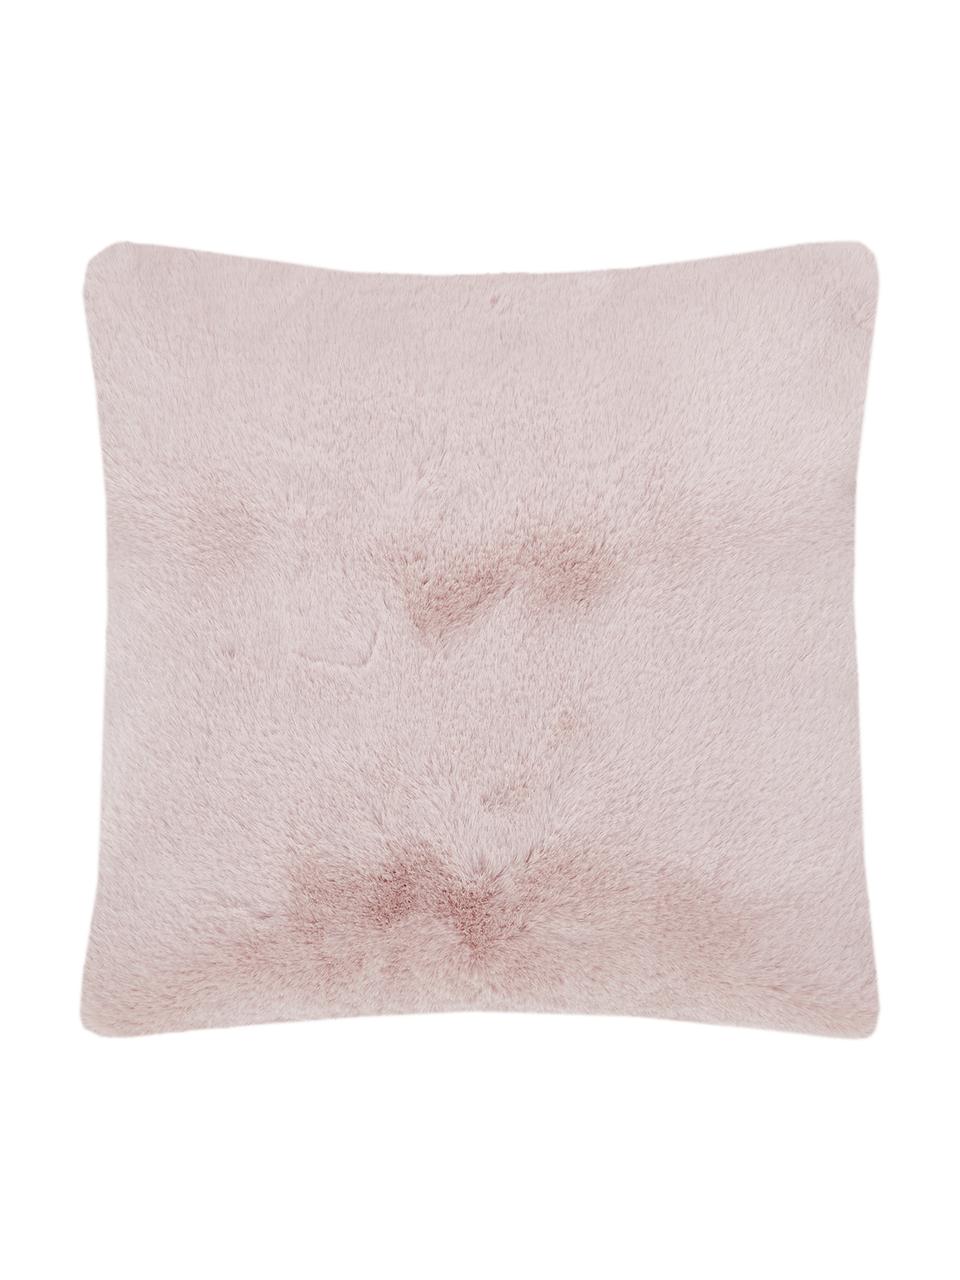 Poszewka na poduszkę ze sztucznego futra Mette, gładki, Blady różowy, S 45 x D 45 cm